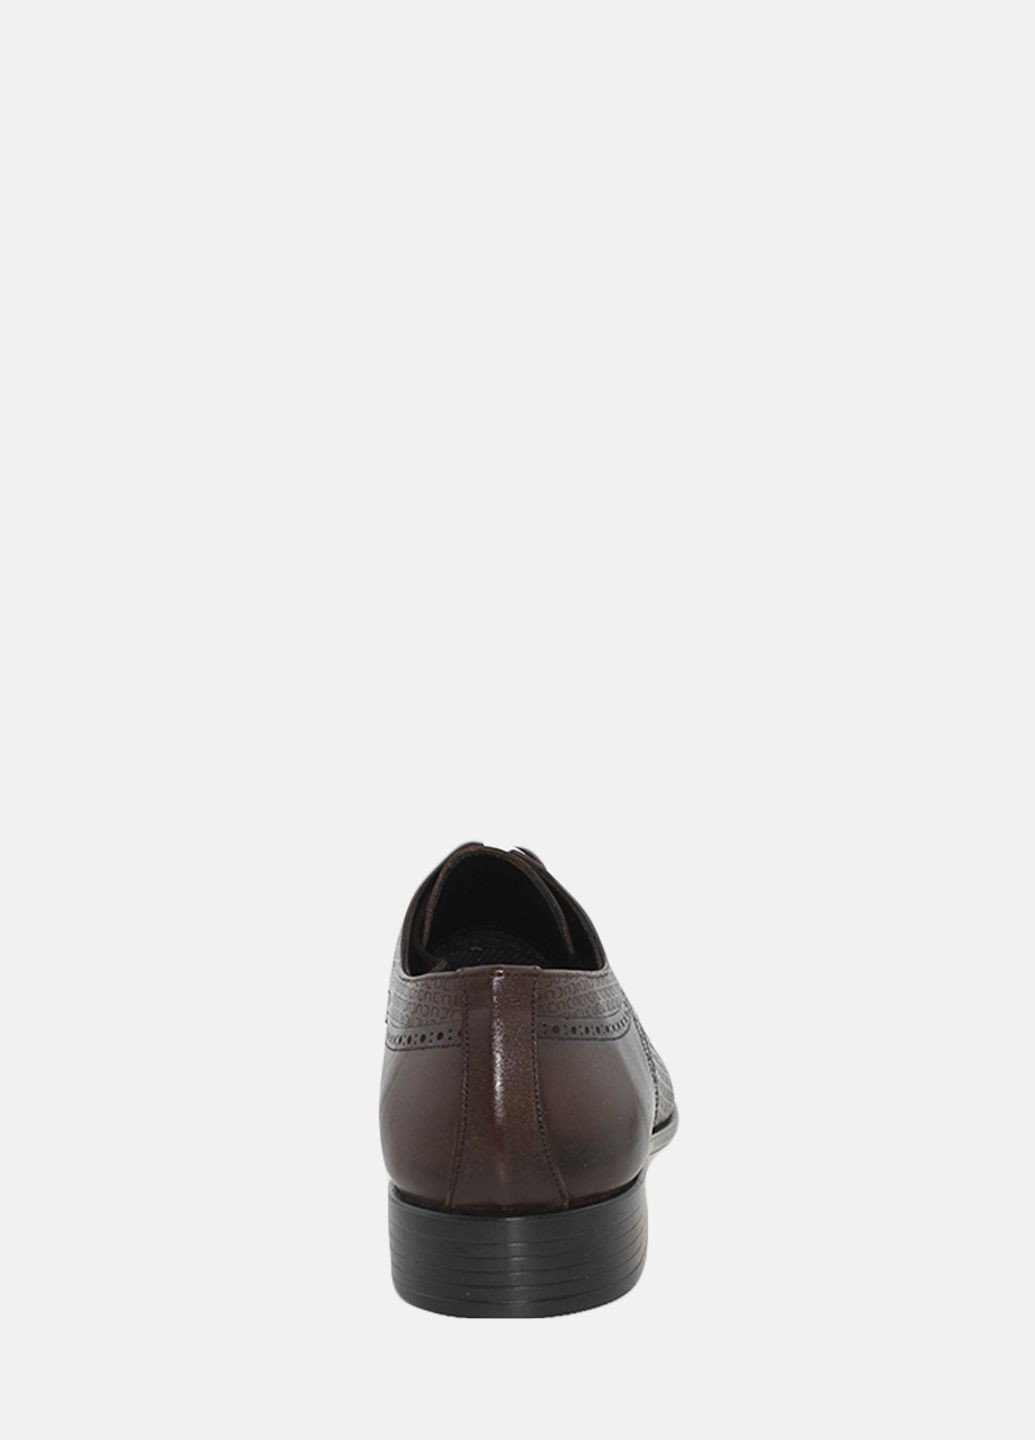 Коричневые туфли g2009.02 коричневый Goover